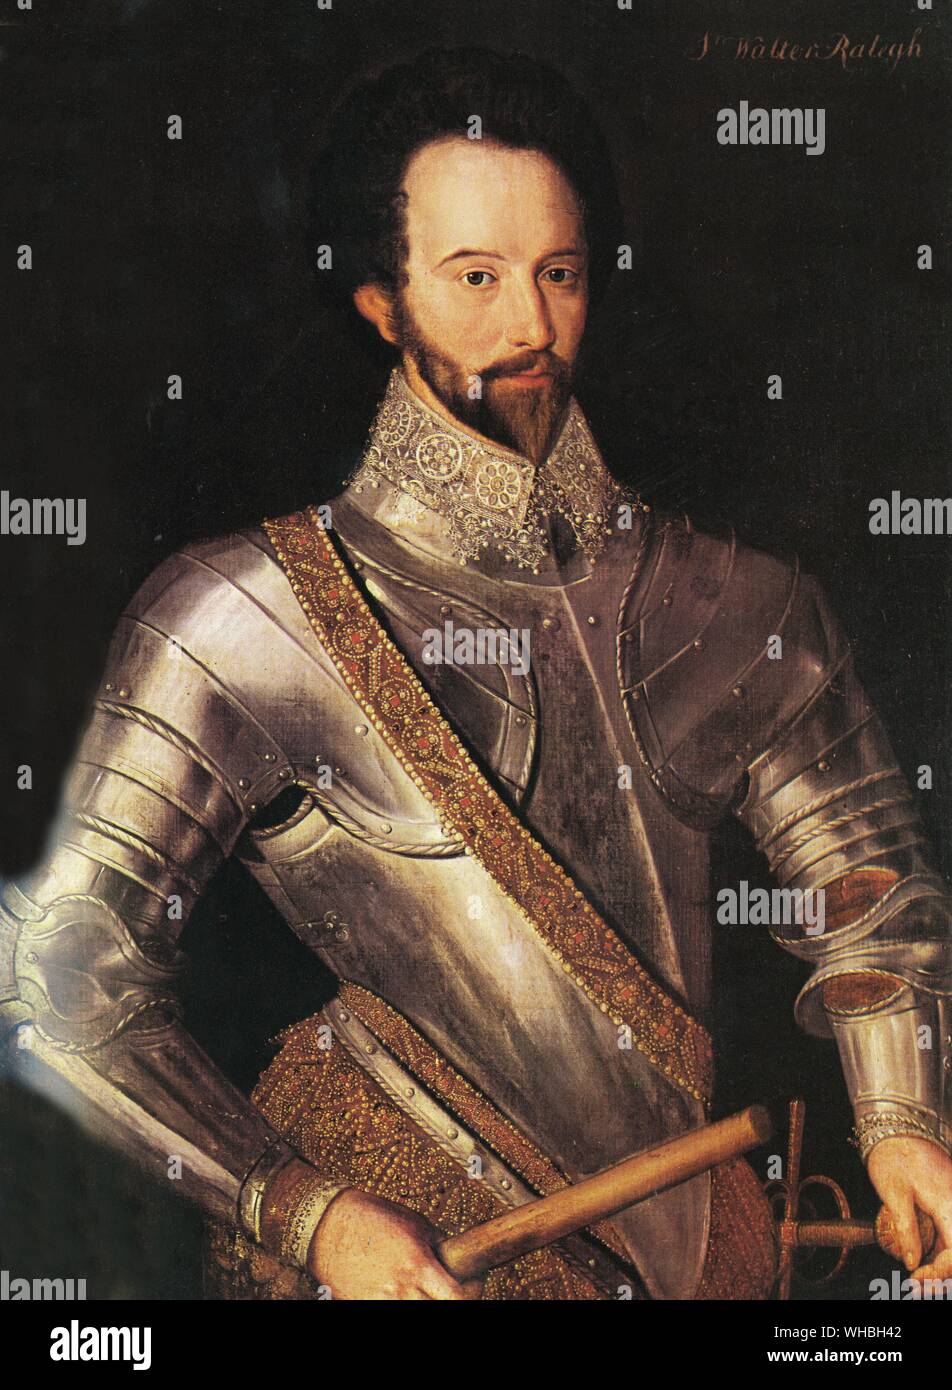 Sir Walter Raleigh, eine Sonne unter Männern als Soldat und Höfling, Explorer, Historiker, und Vater von Nikotin, war der umwirbt die Mondgöttin, wenn er seine Schule der Nacht einberufen vermutet.. Sir Walter Raleigh oder Ralegh (C. 1552 - 29. Oktober 1618), war ein berühmter englischer Schriftsteller, Dichter, höfling und Explorer.. Stockfoto